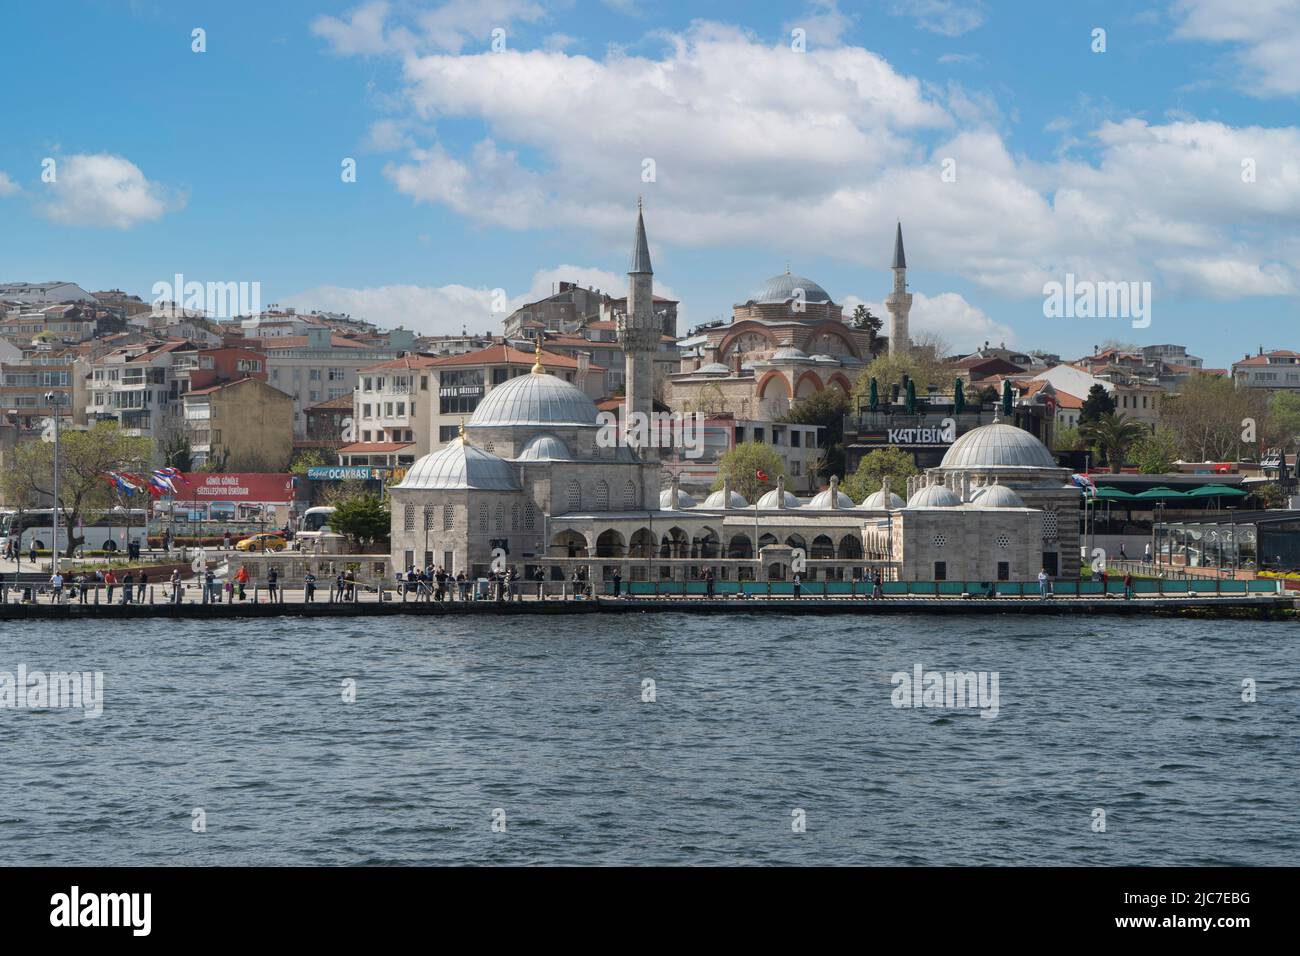 Die Moschee von Şemsi Ahmet Paşa im Istanbuler Stadtteil Üsküdar. Die Moschee, die als Vögel bekannt ist, landet wegen der Windströmungen nicht auf der Moschee. Stockfoto